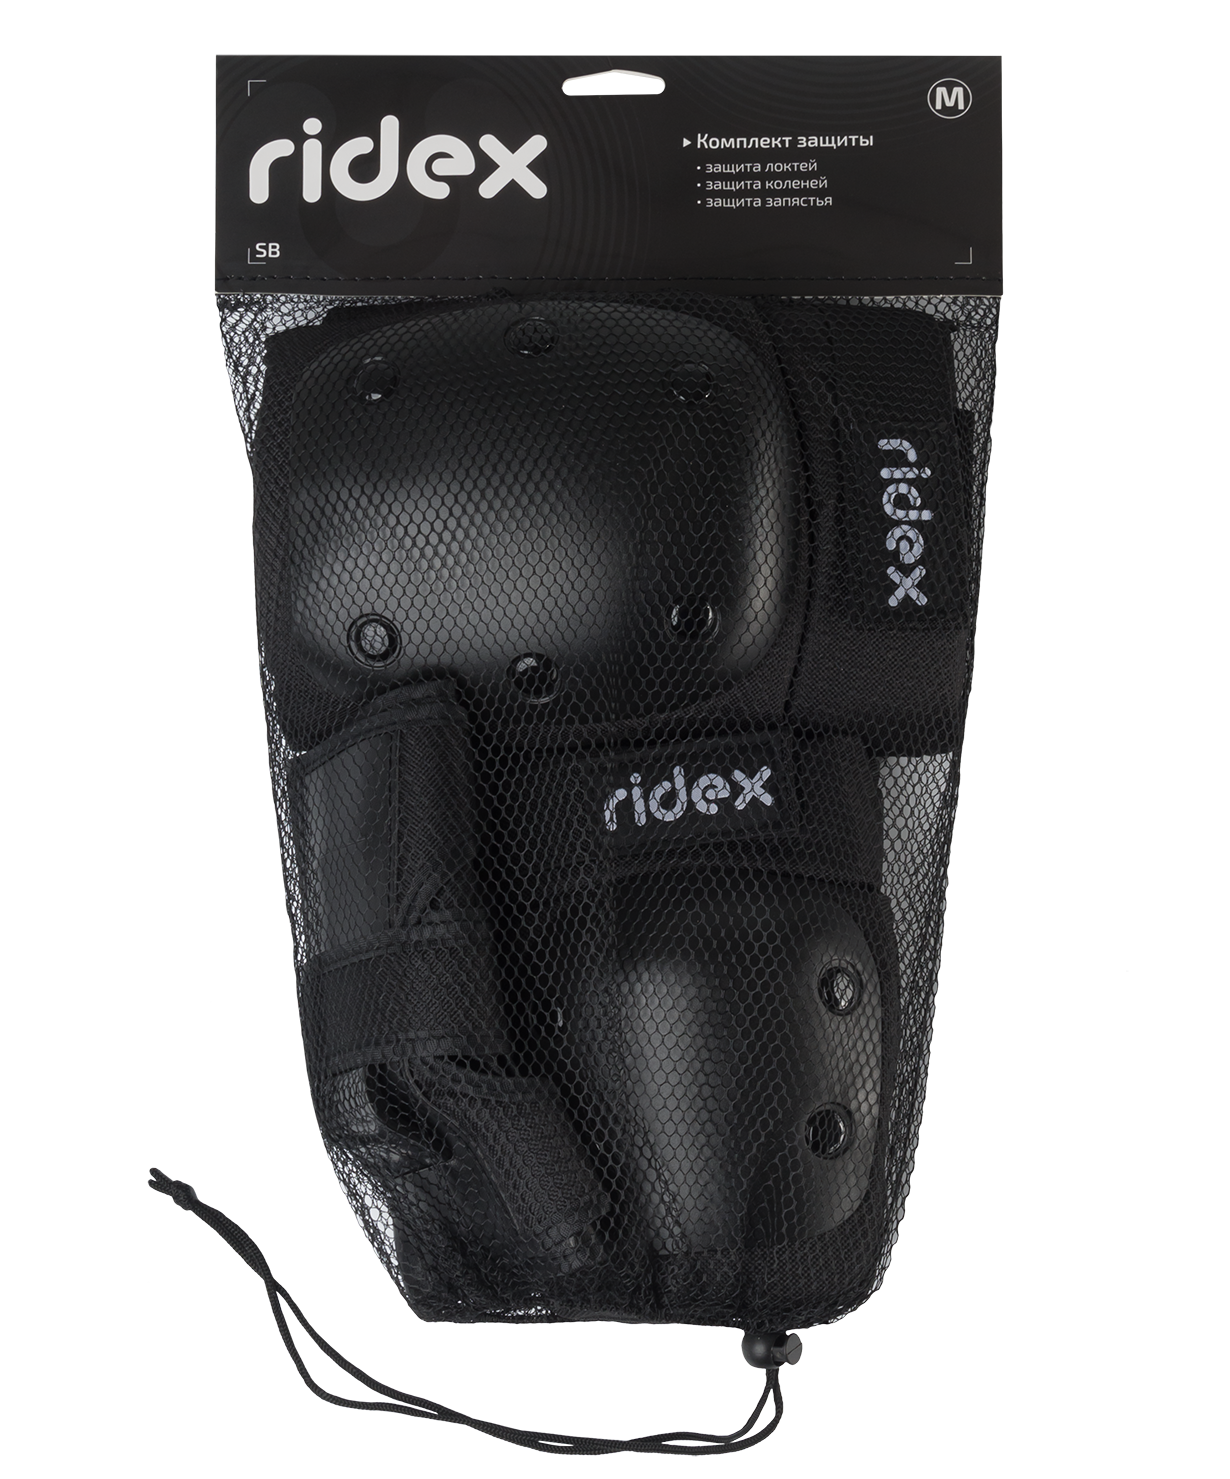 Комплект защиты RIDEX SB, цвет черный, размер S